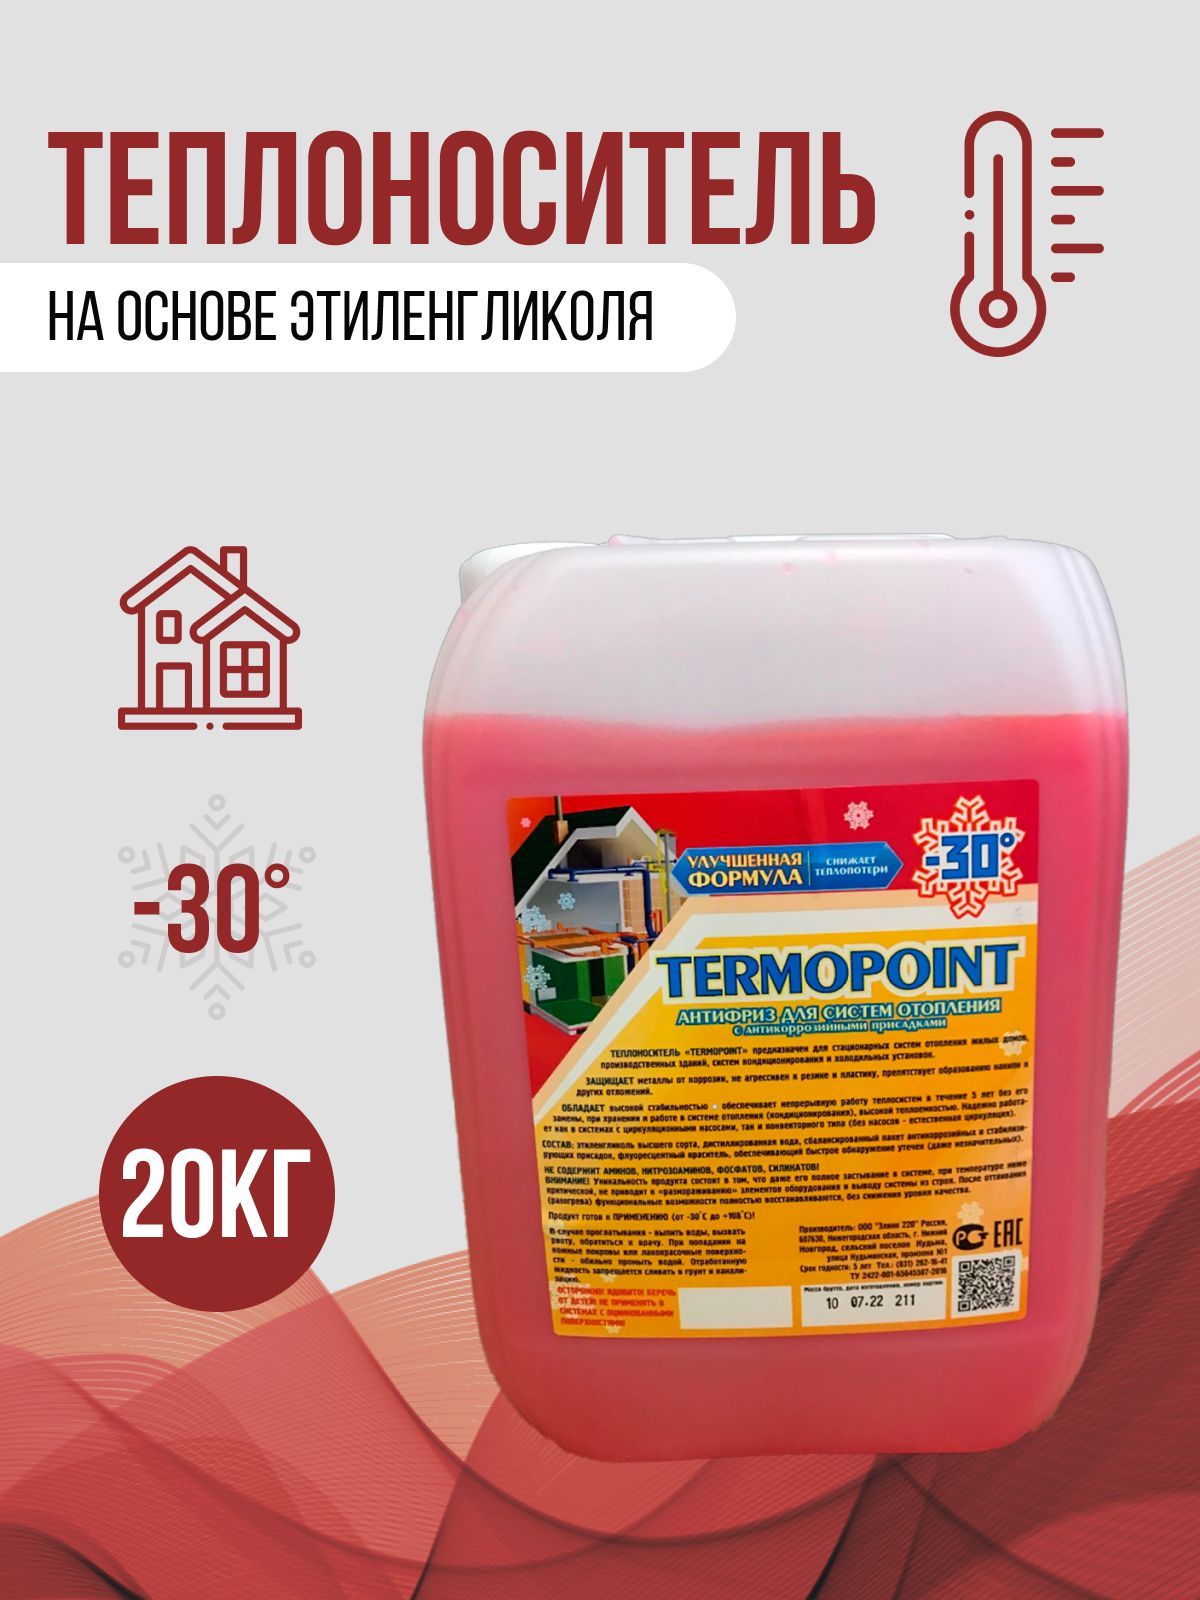 Теплоноситель для отопления дома на основе этиленгликоля -30С Termopoint 20 кг теплоноситель eco therm vita pro 60 °с 10 кг на основе пропиленгликоля